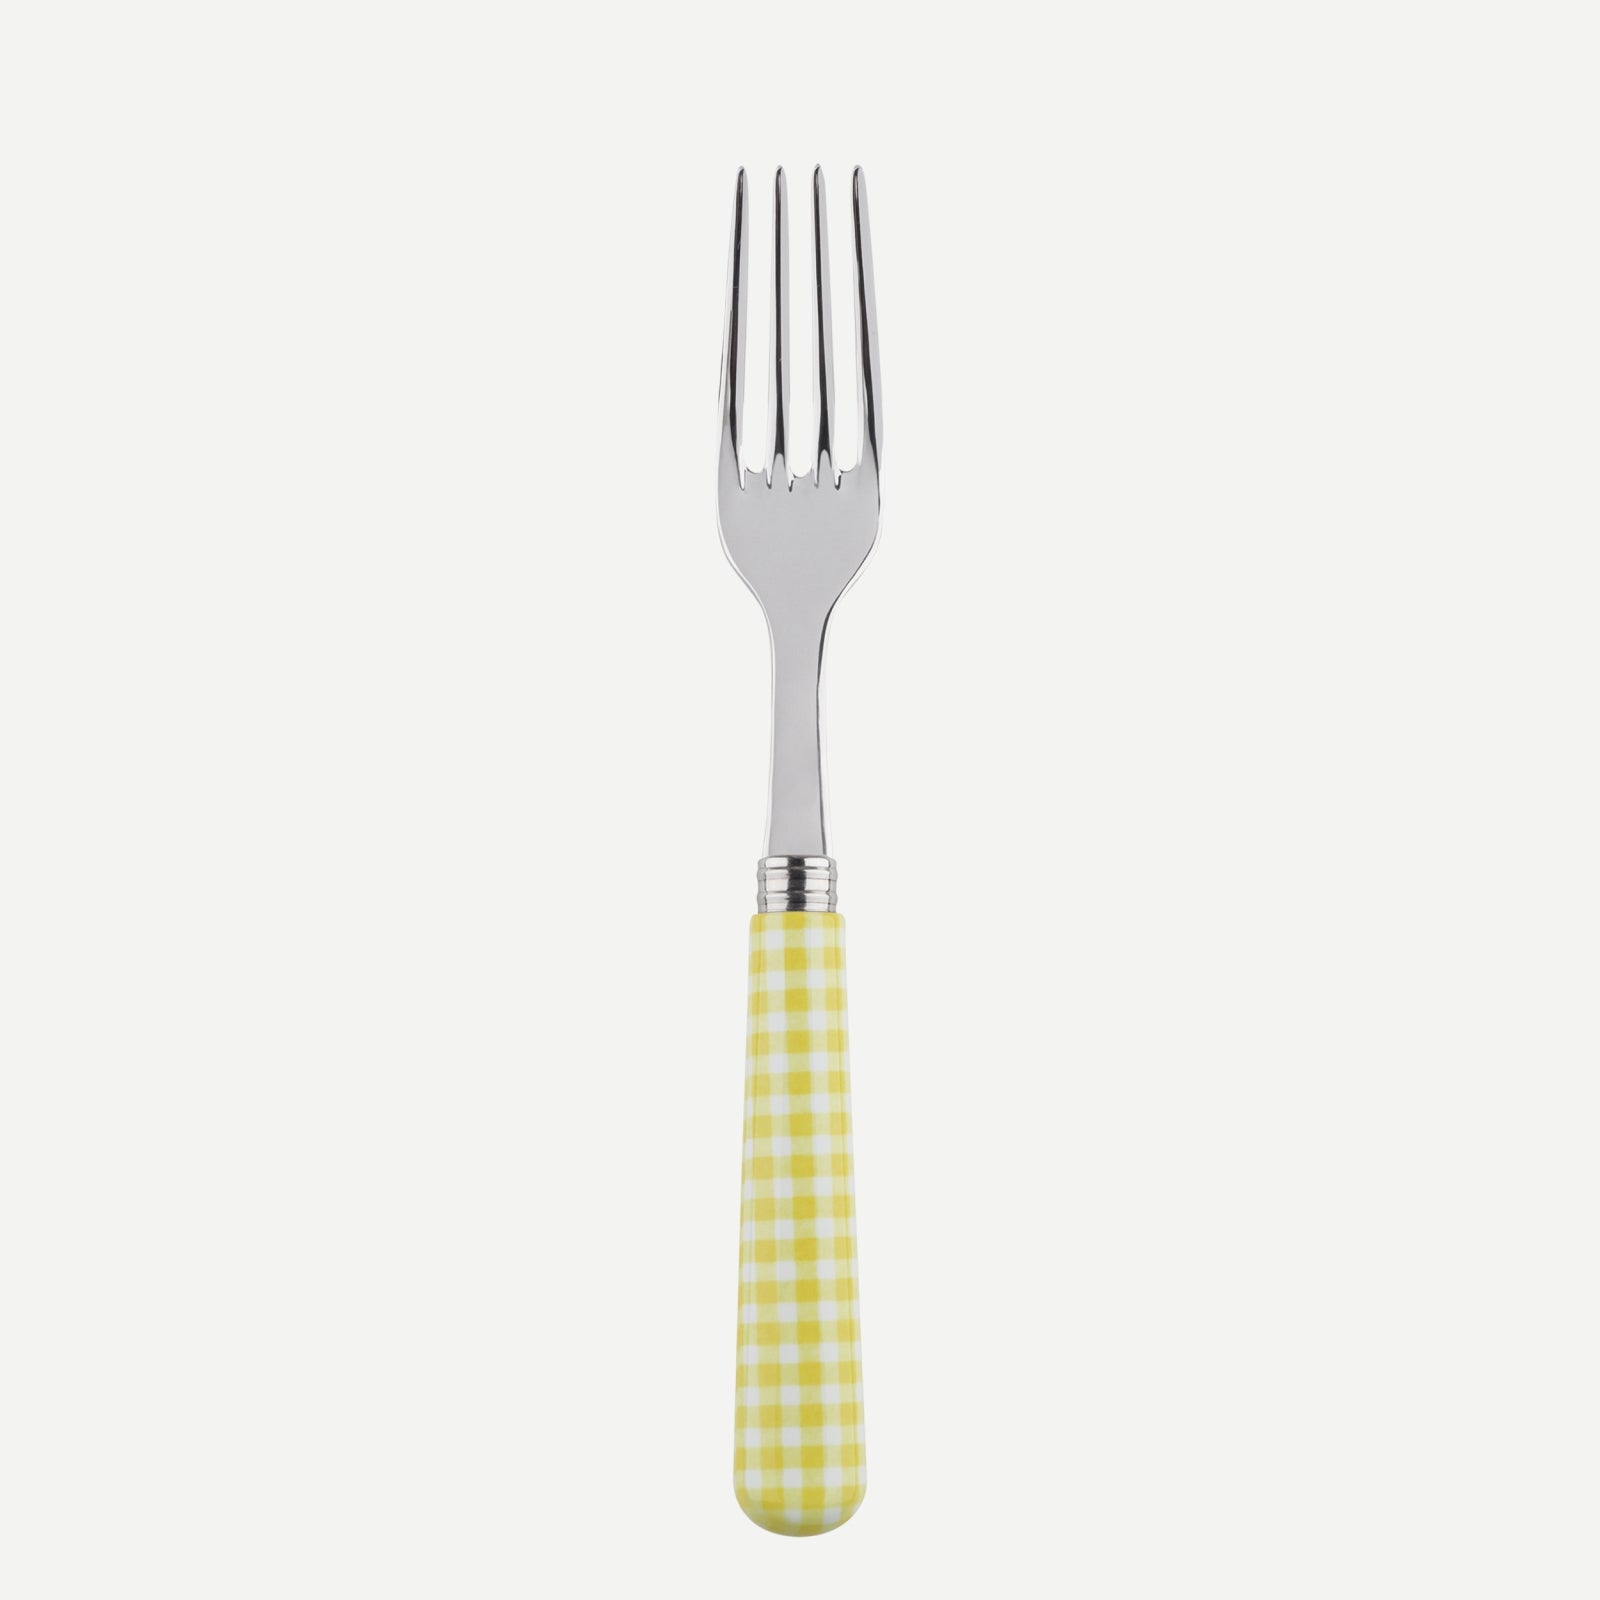 Dinner fork - Gingham - Yellow